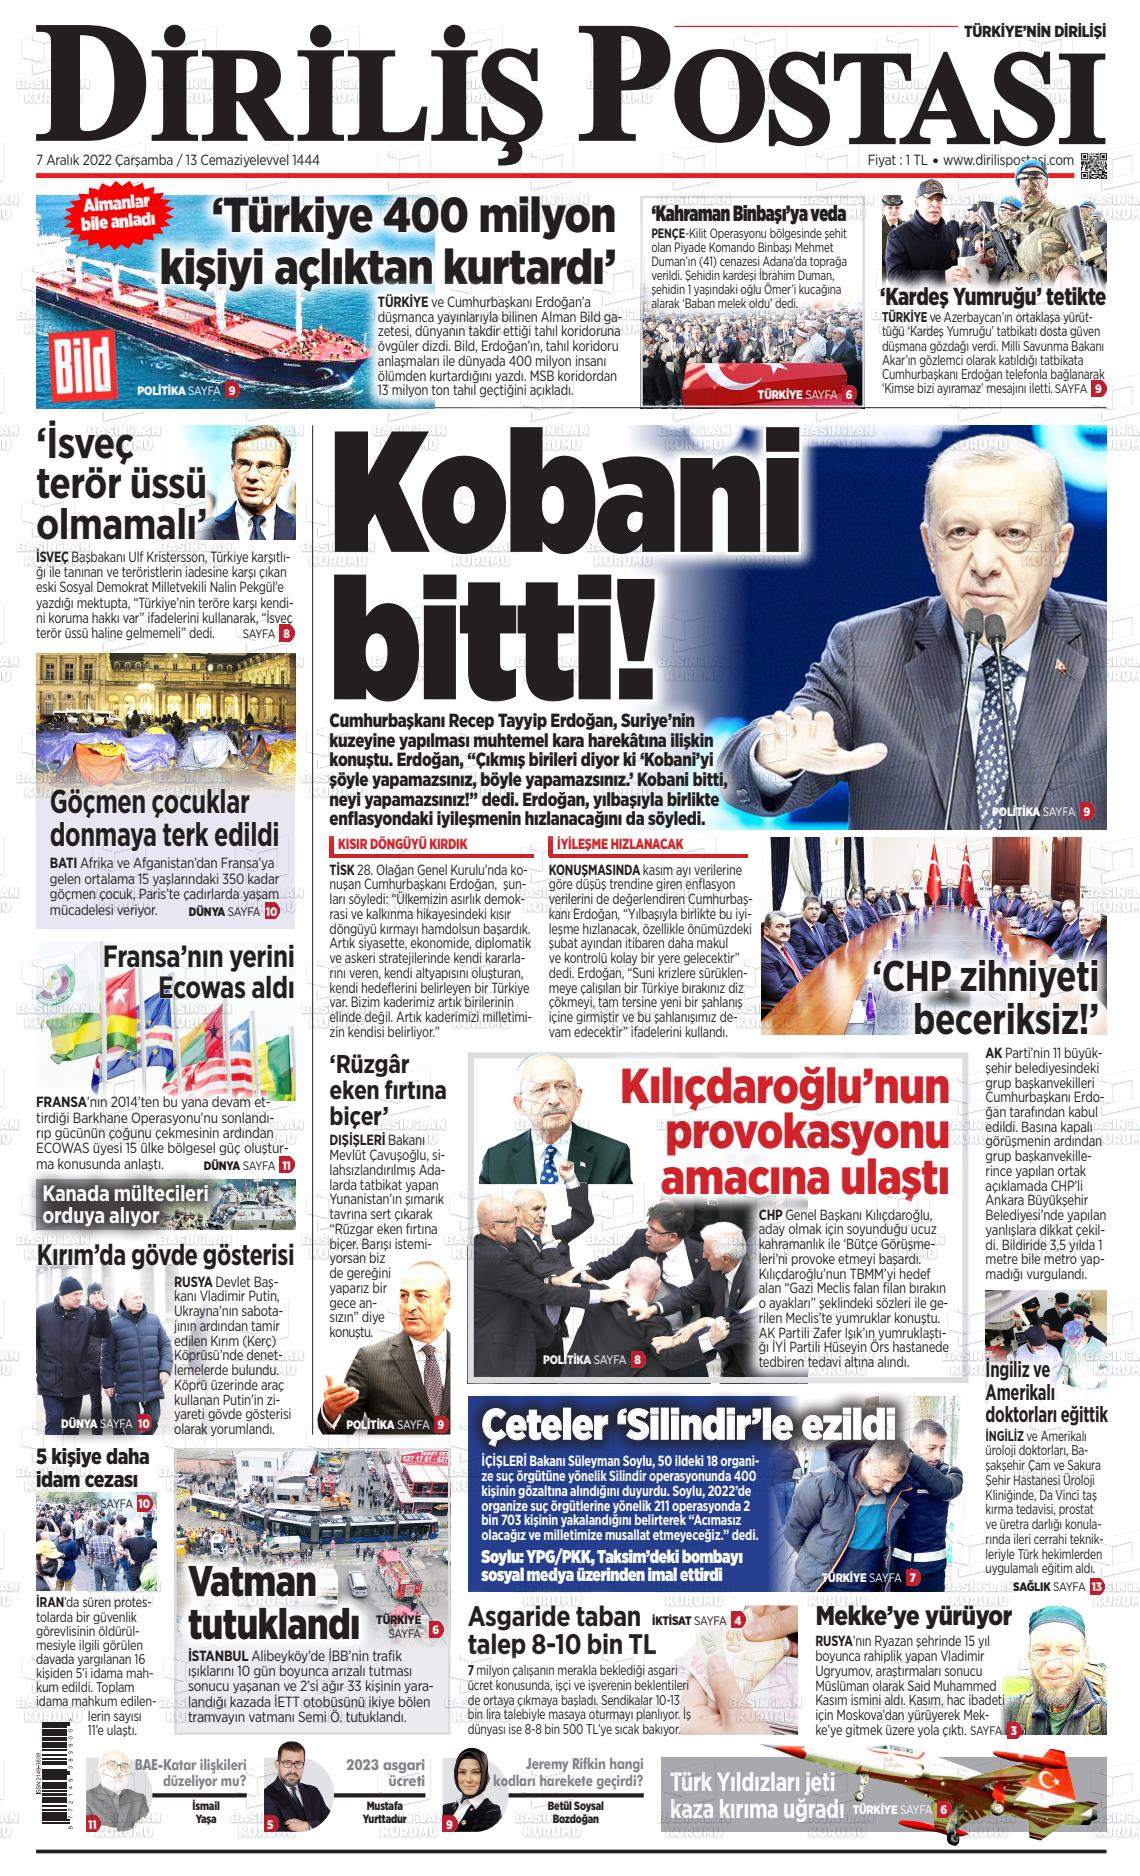 07 Aralık 2022 Diriliş Postası Gazete Manşeti